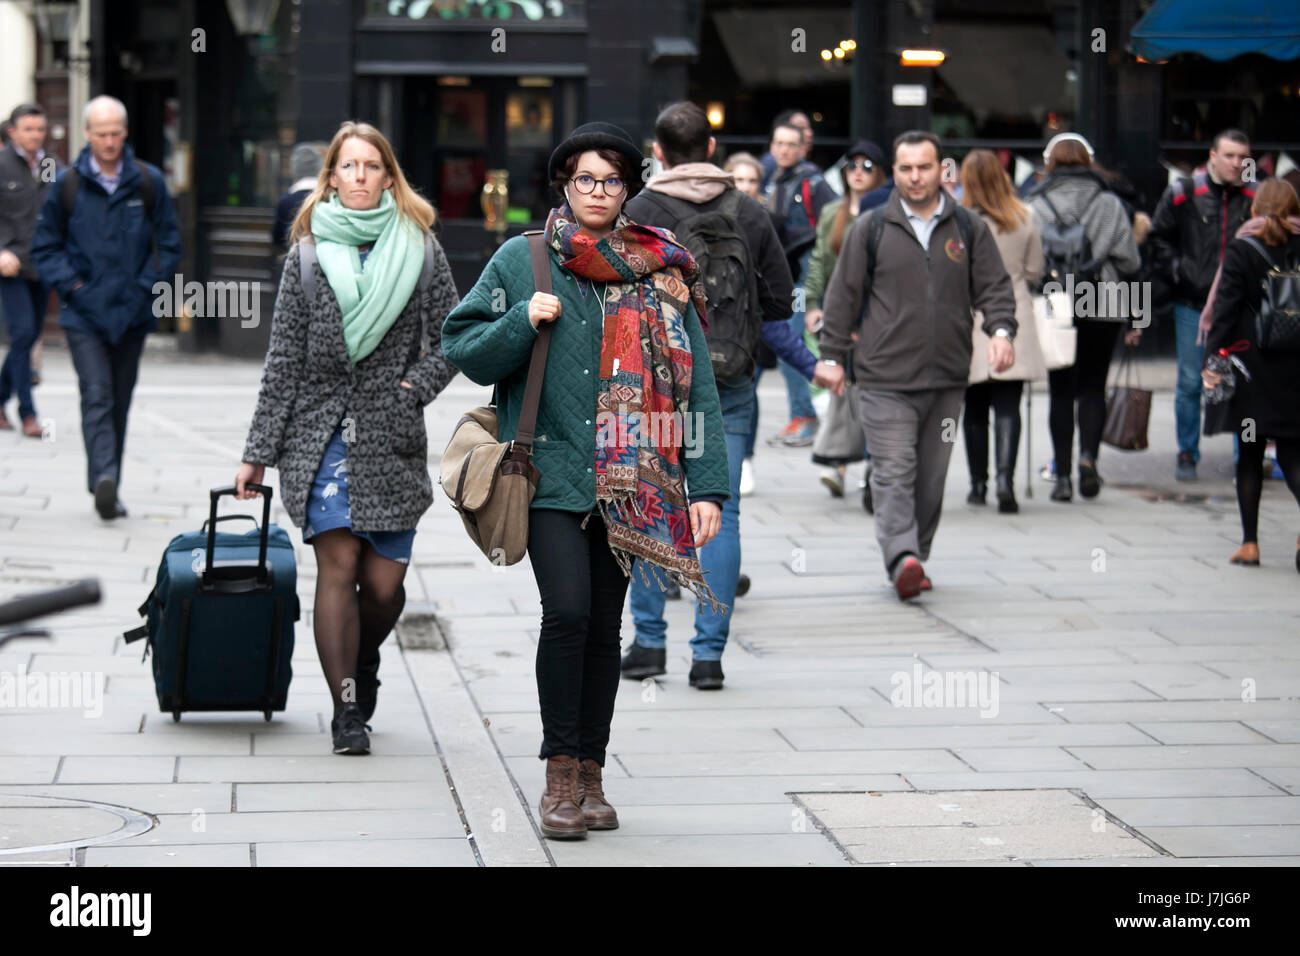 Londres, ANGLETERRE - 12 mars 2017 une femme dans un black hat et gaine verte promenades dans la foule parmi les autres passant Banque D'Images